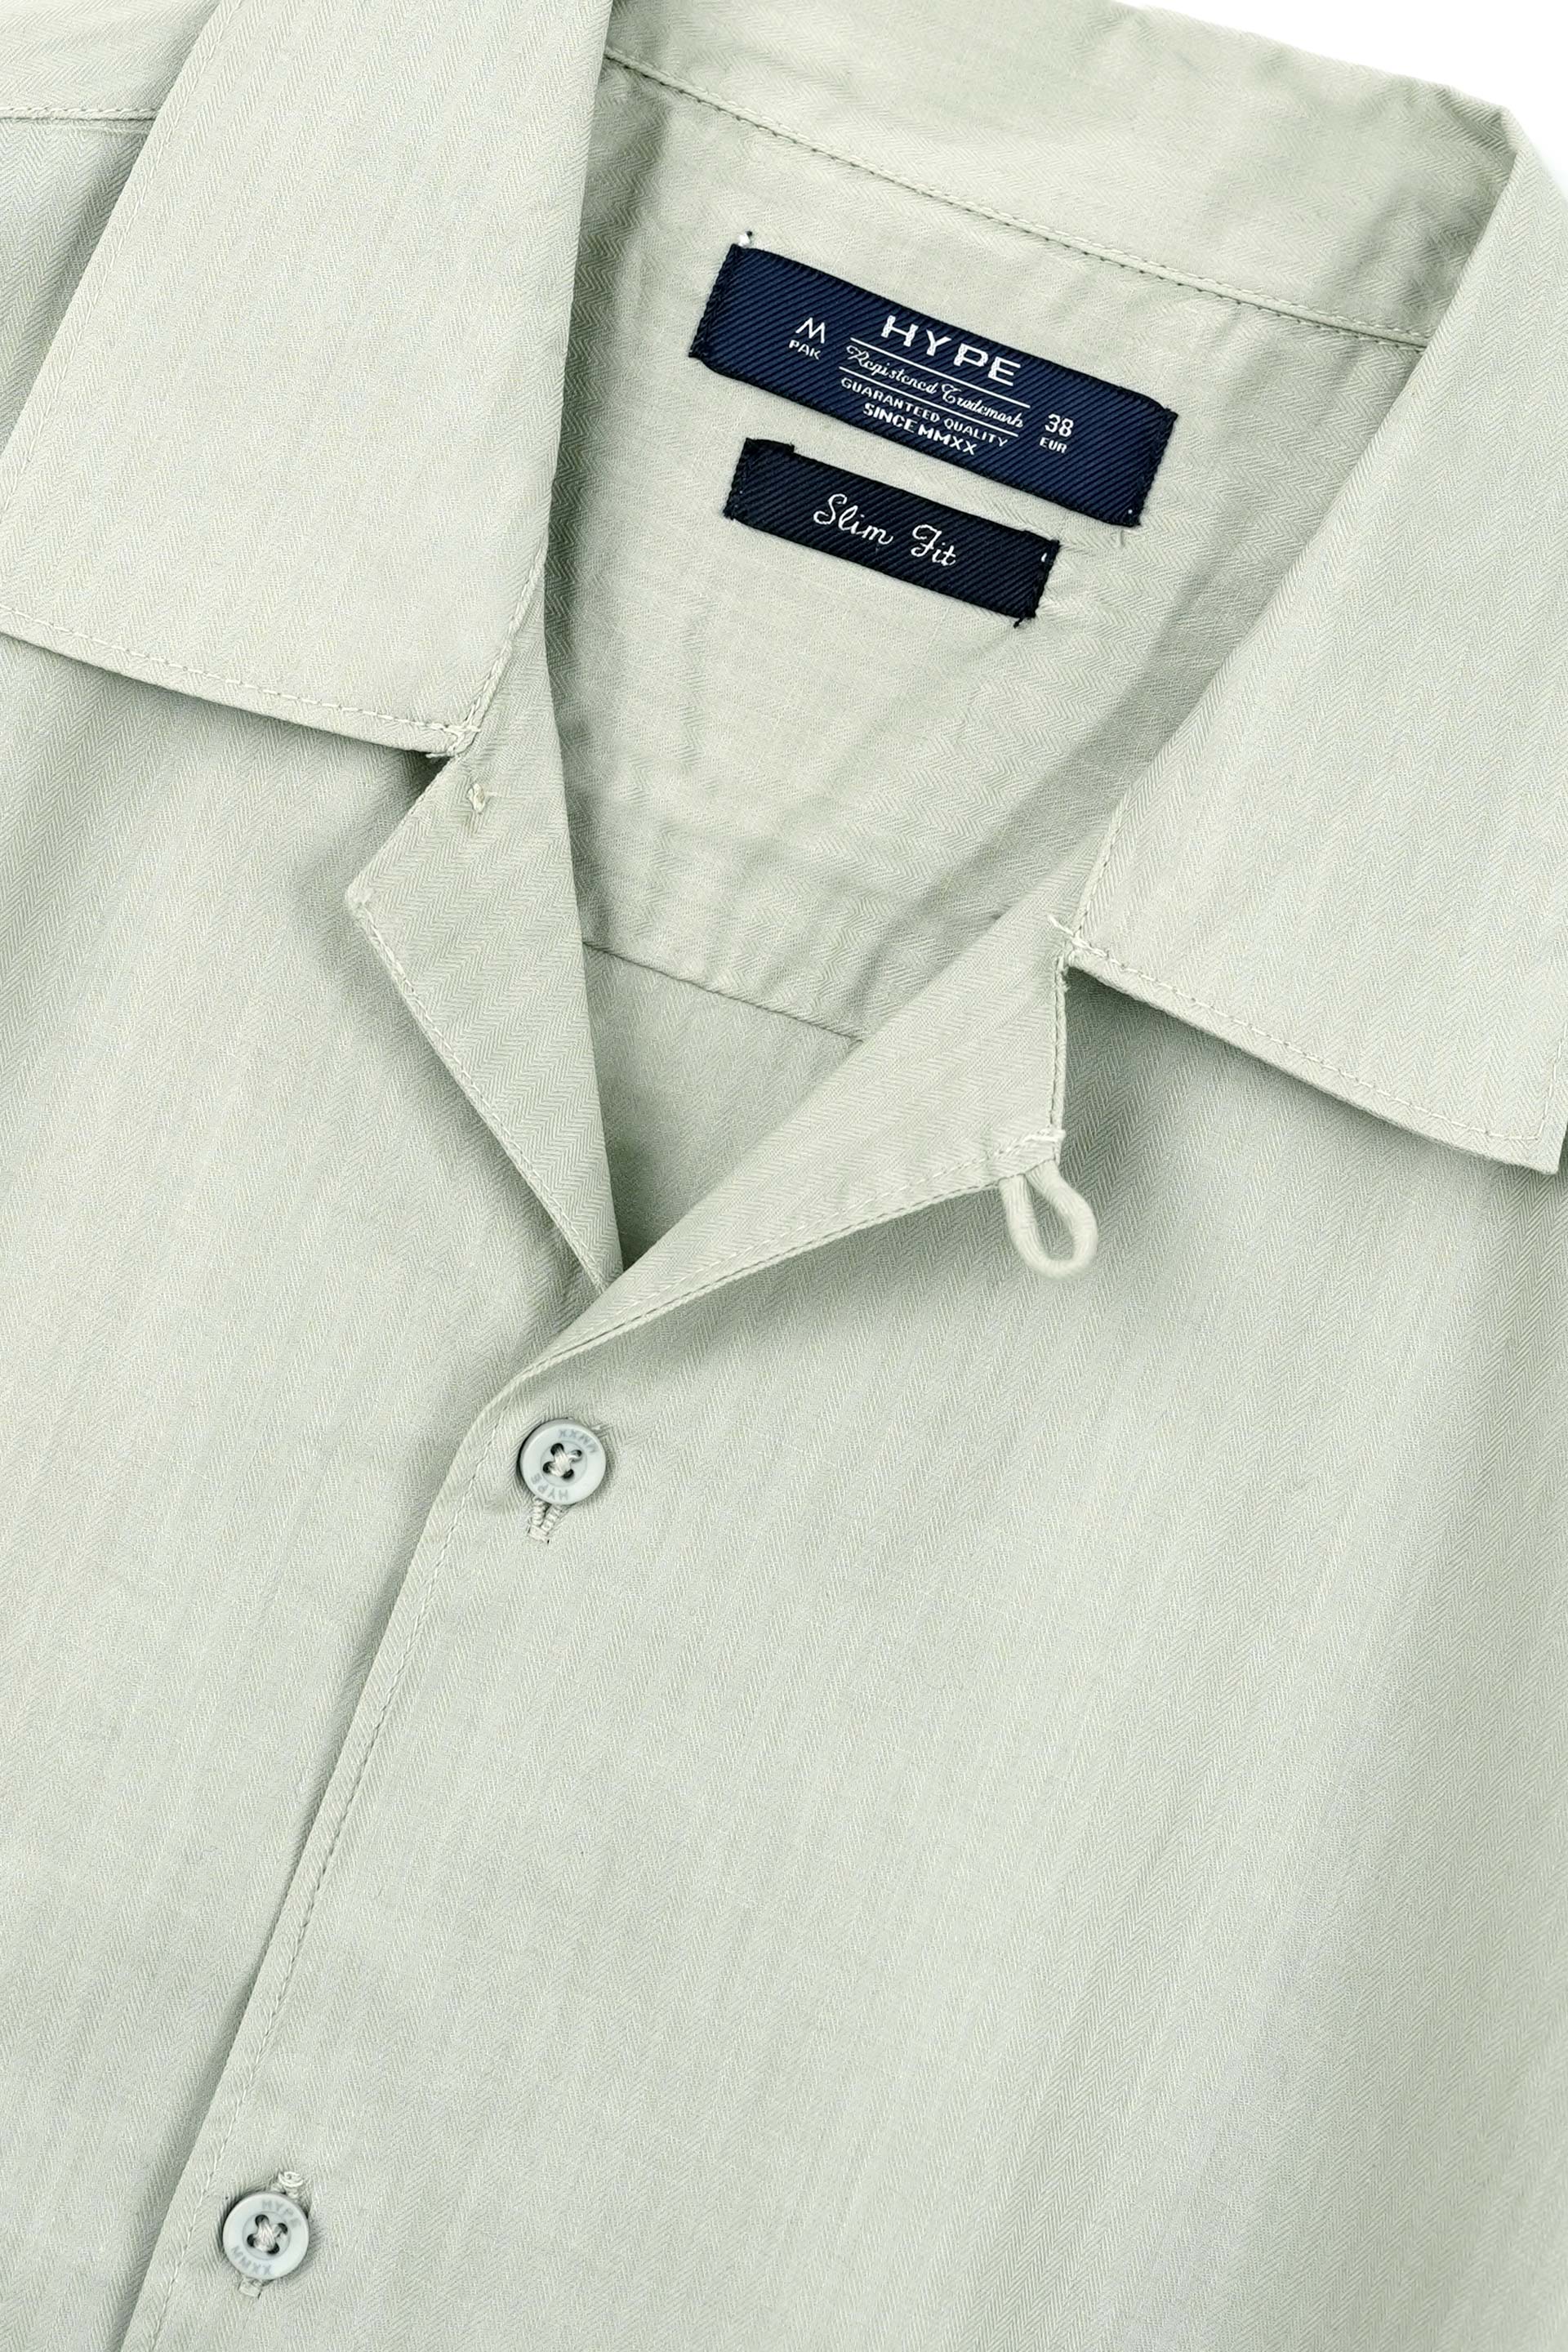 Half Sleeve Coat Collar Casual Shirt 001985